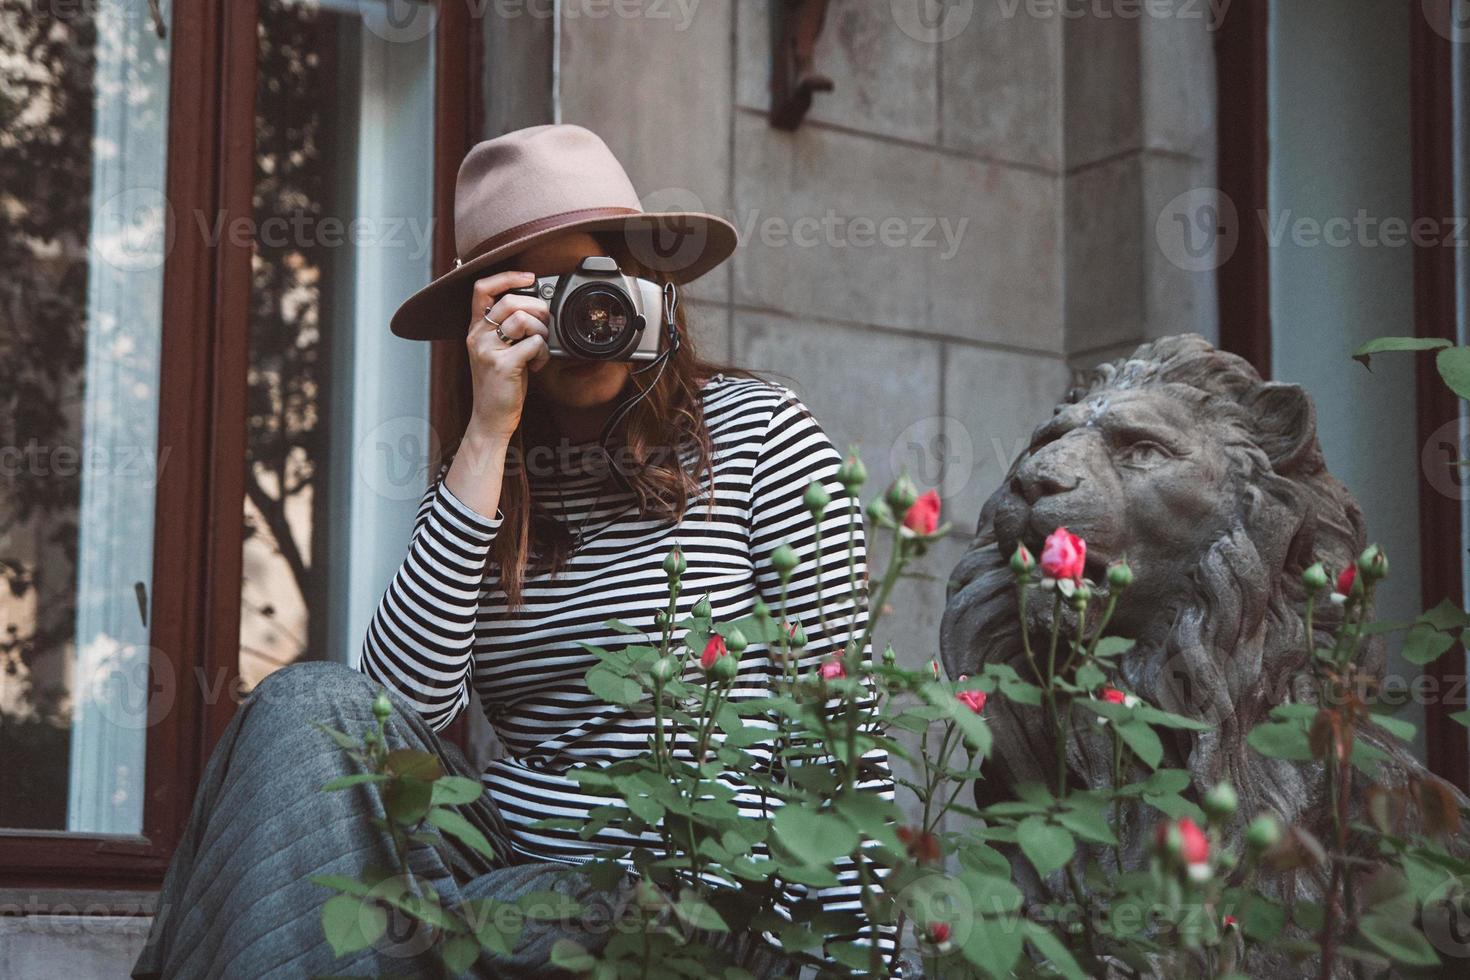 bella donna con cappello scatta una foto con una macchina fotografica vecchio stile